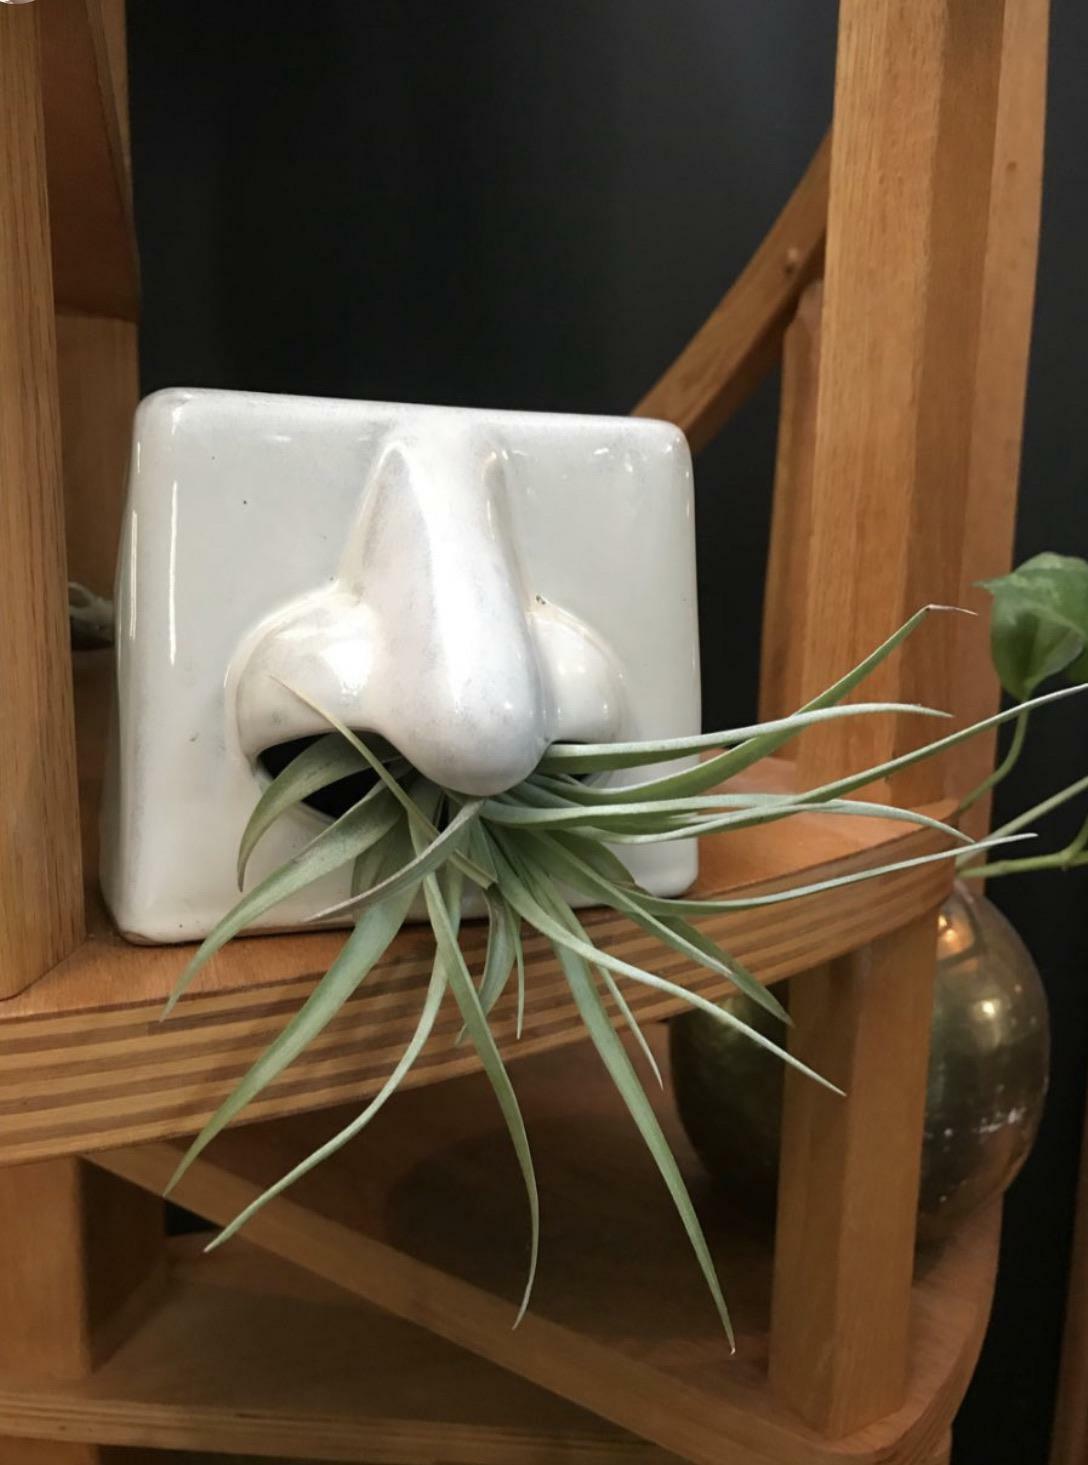 Ce drôle de porte-mouchoir en céramique fait un bien meilleur présentoir pour les plantes d’intérieur, je pense !